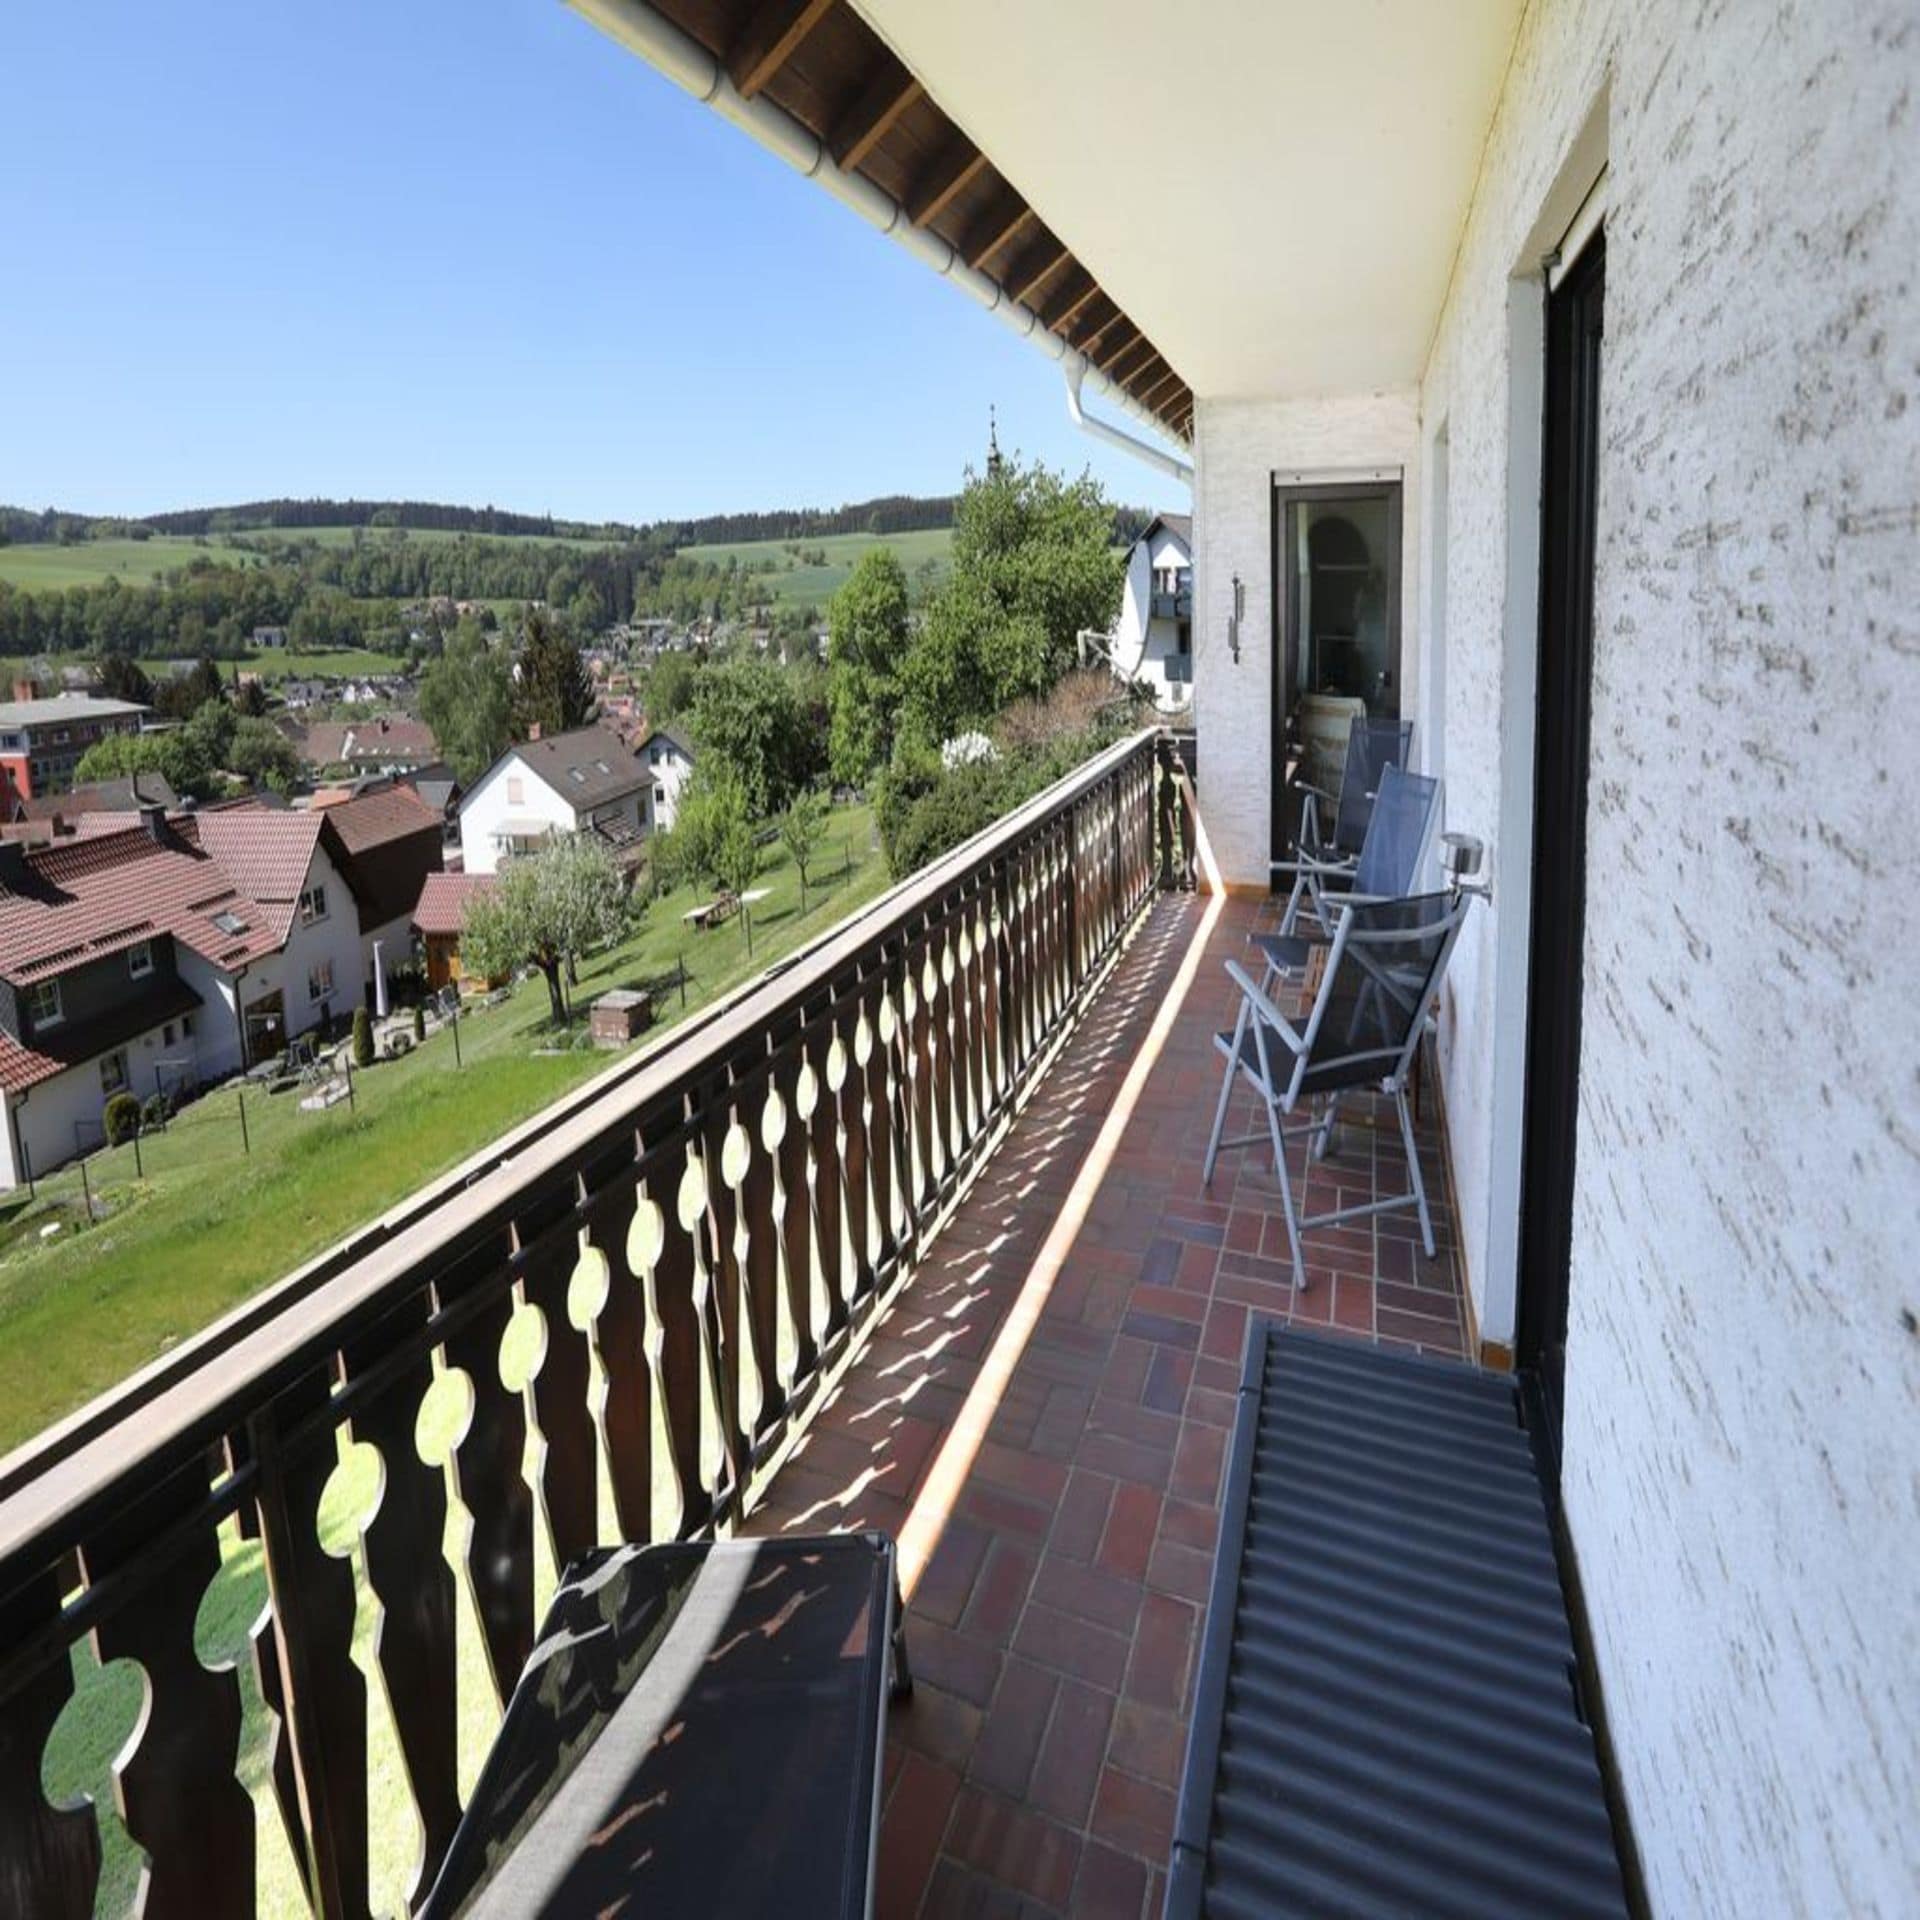 Seitlicher Blick von einem Balkon auf den Ort Hilders und die Landschaft.